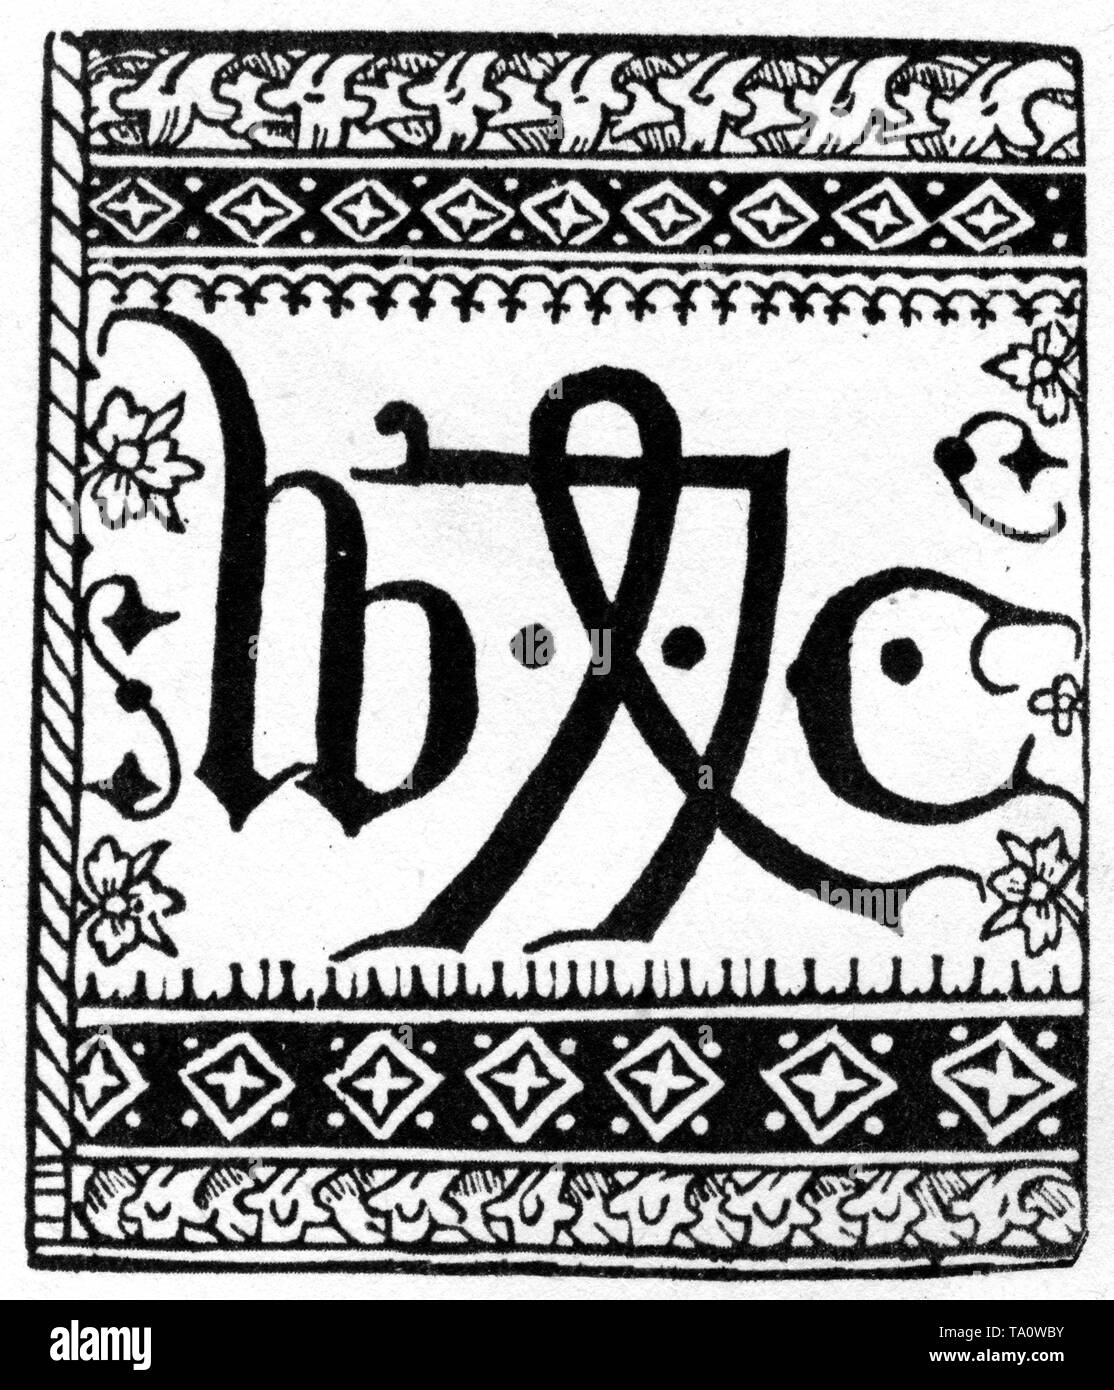 Marque ou dispositif de l'imprimante de Caxton, 1478. Par William Caxton (c1415-1422-c1492). Caxton était un marchand anglais, un diplomate, un écrivain et une imprimante. Caxton est considéré comme la première personne anglaise à travailler comme imprimeur et la première à introduire une presse à imprimer en Angleterre. Banque D'Images